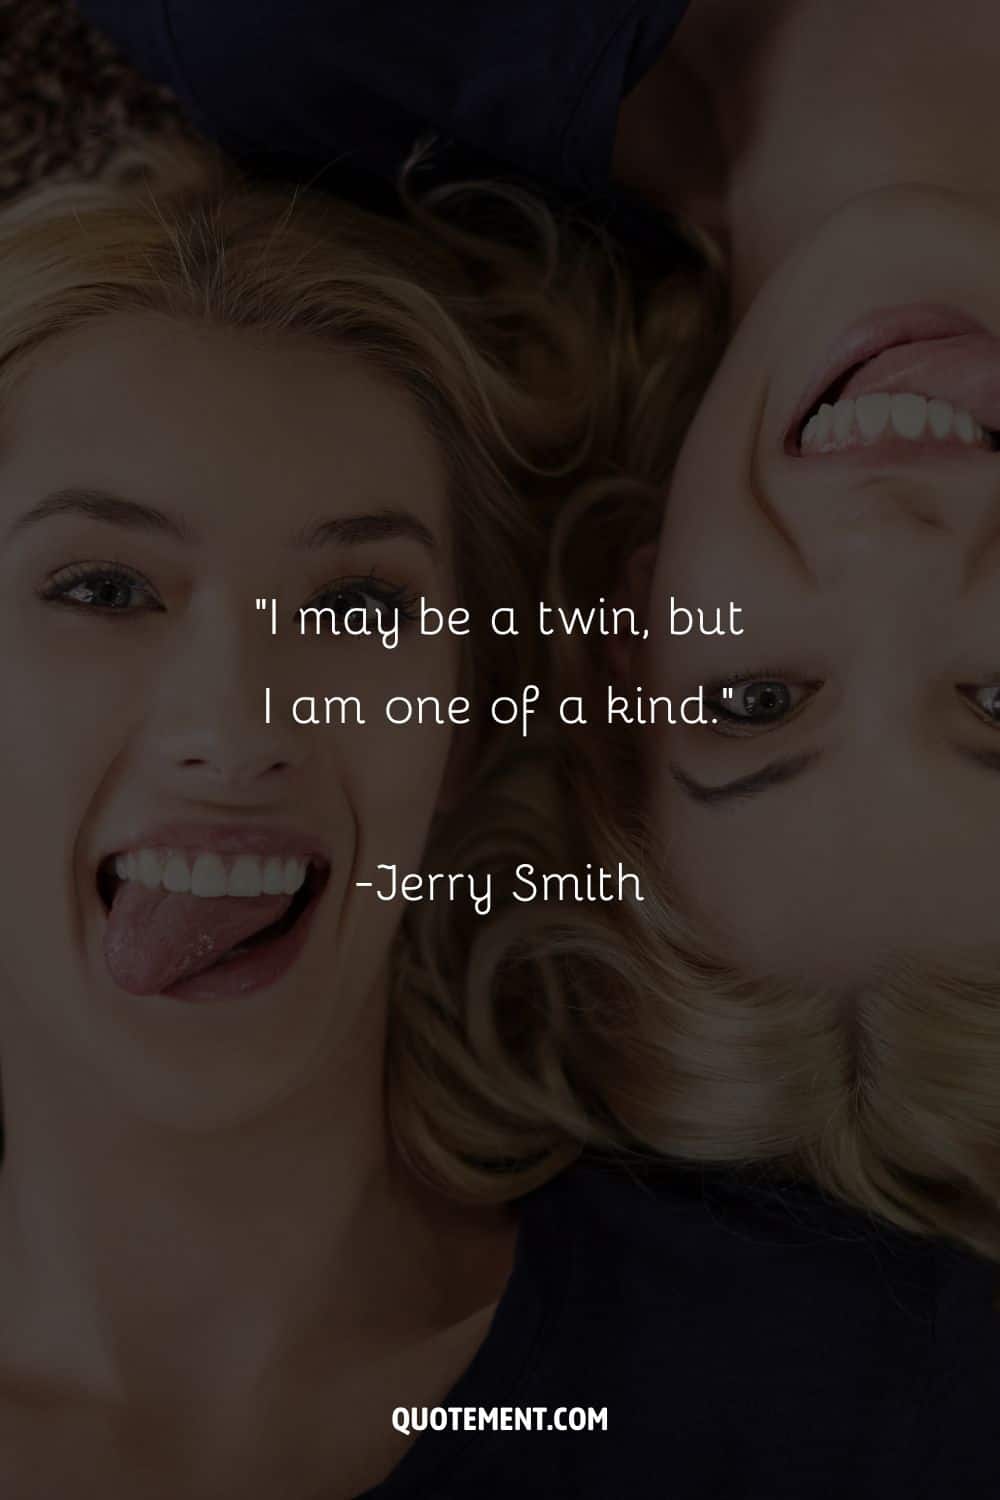 “I may be a twin, but I am one of a kind.” – Jerry Smith